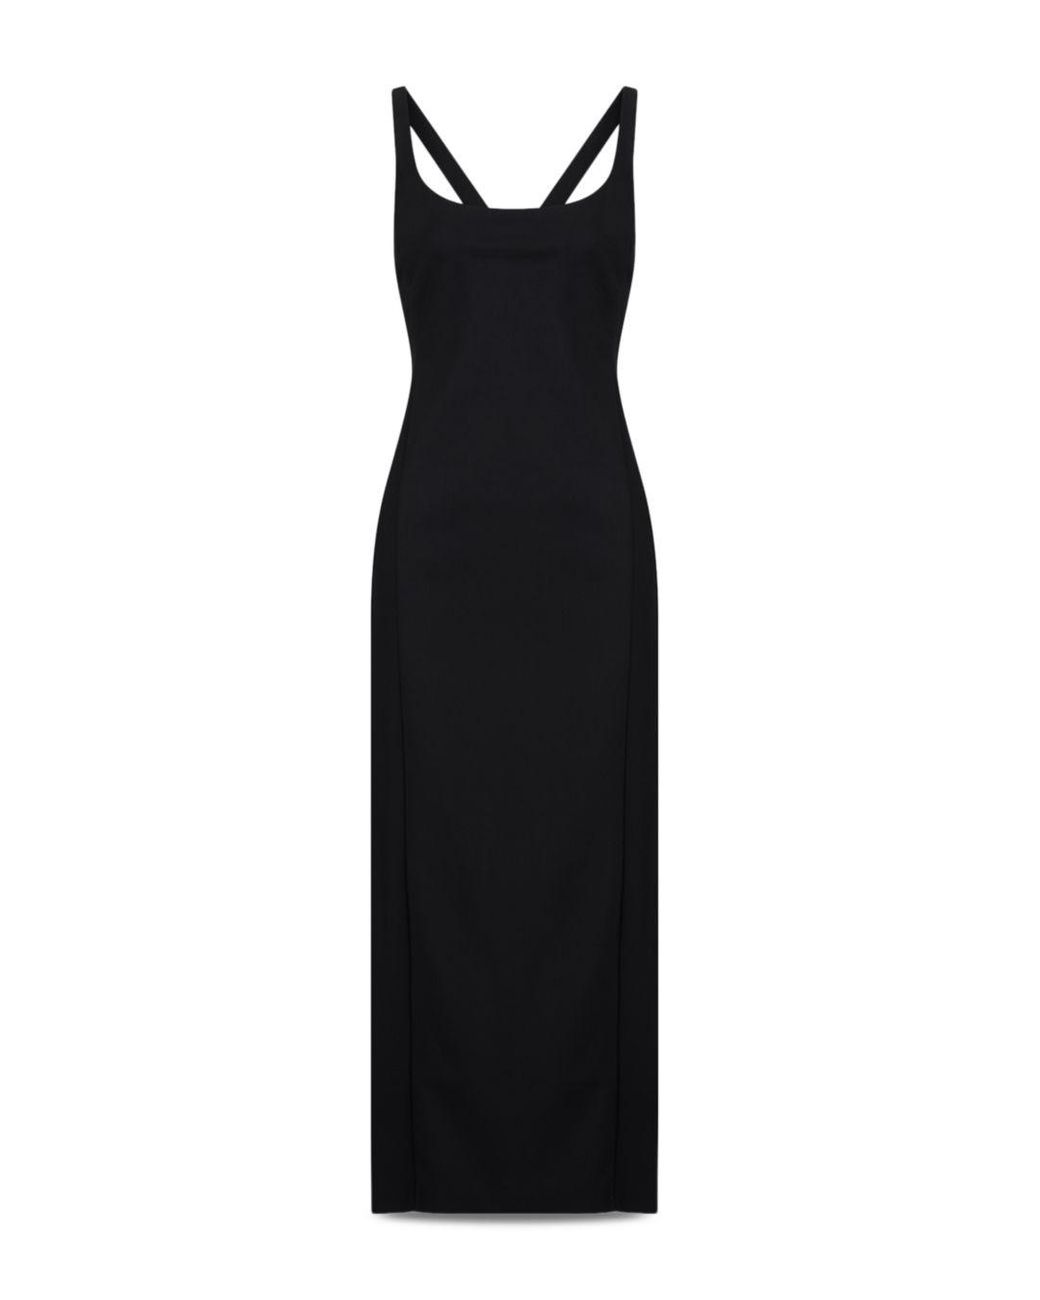 Armani Emporio Vestito Sleeveless Scoop Neck Midi Dress in Black | Lyst